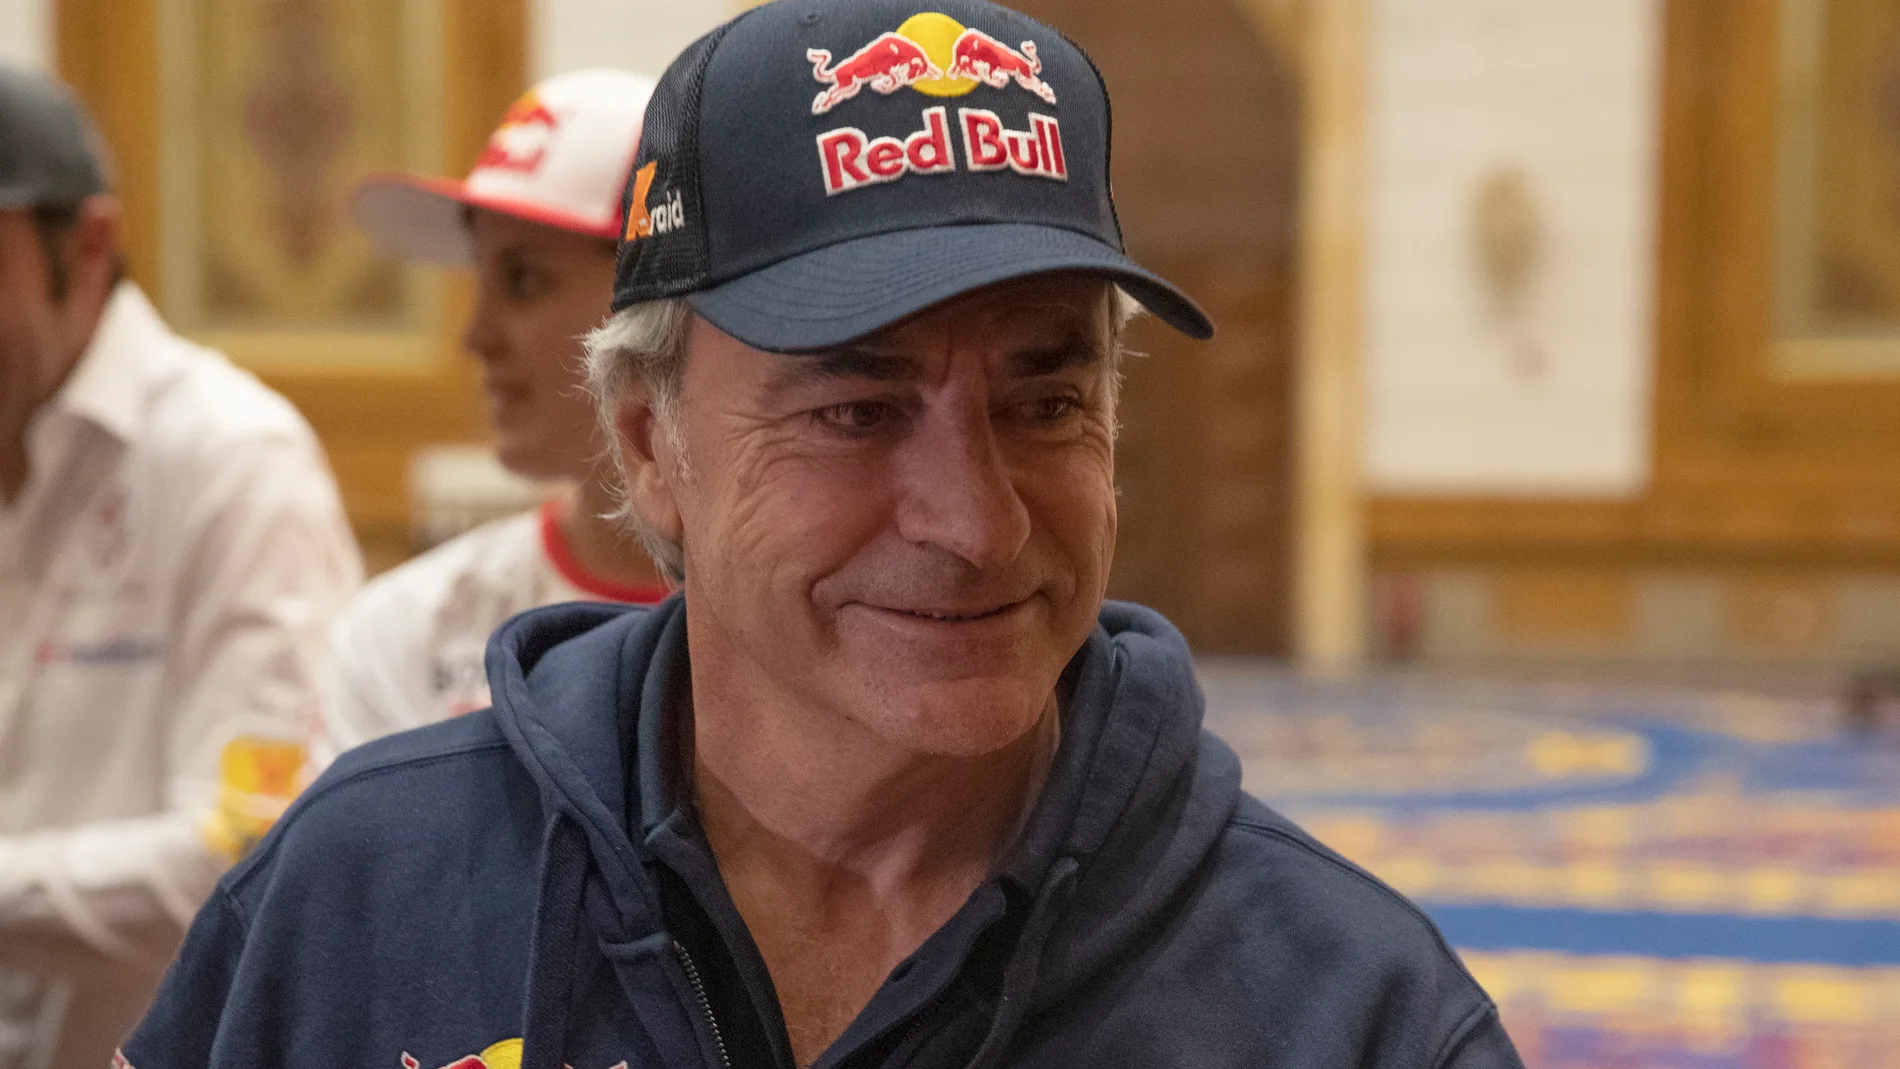 Carlos Sainz, durante el Dakar 2020